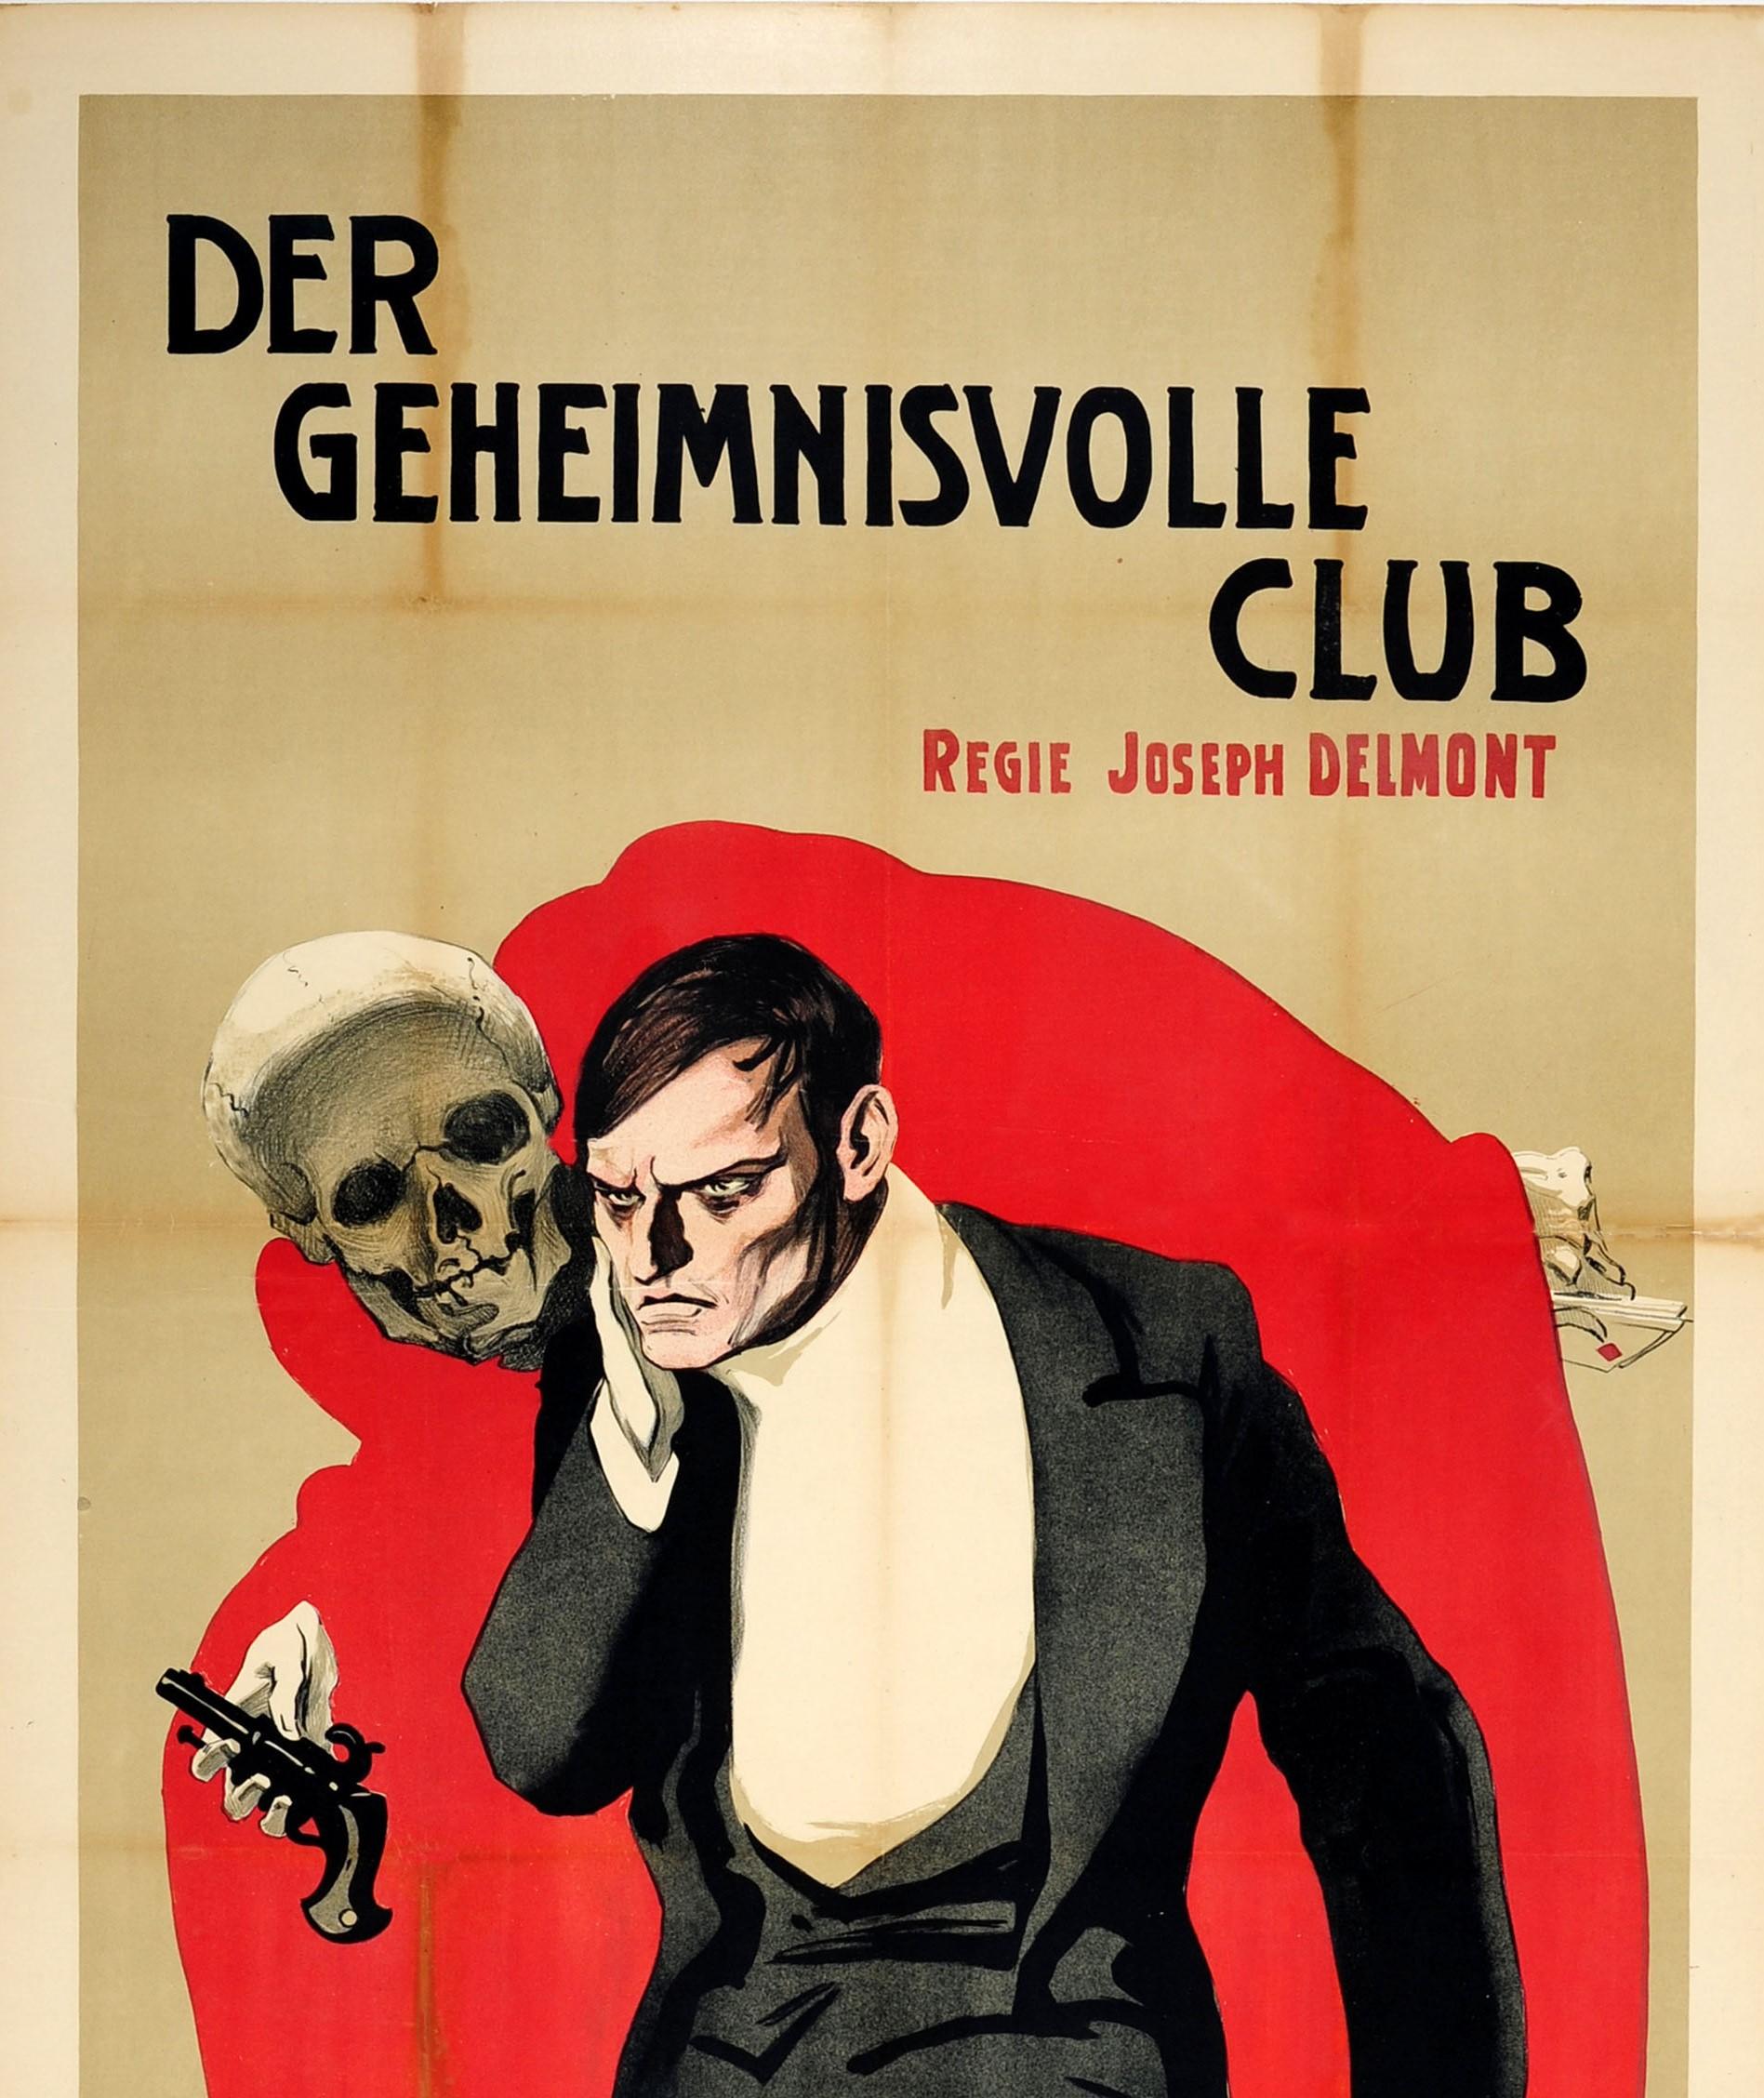 Originales antikes Filmplakat für einen Film - Der Geheimnisvolle Club / The Mysterious Club - basierend auf dem 1896 erschienenen Buch 